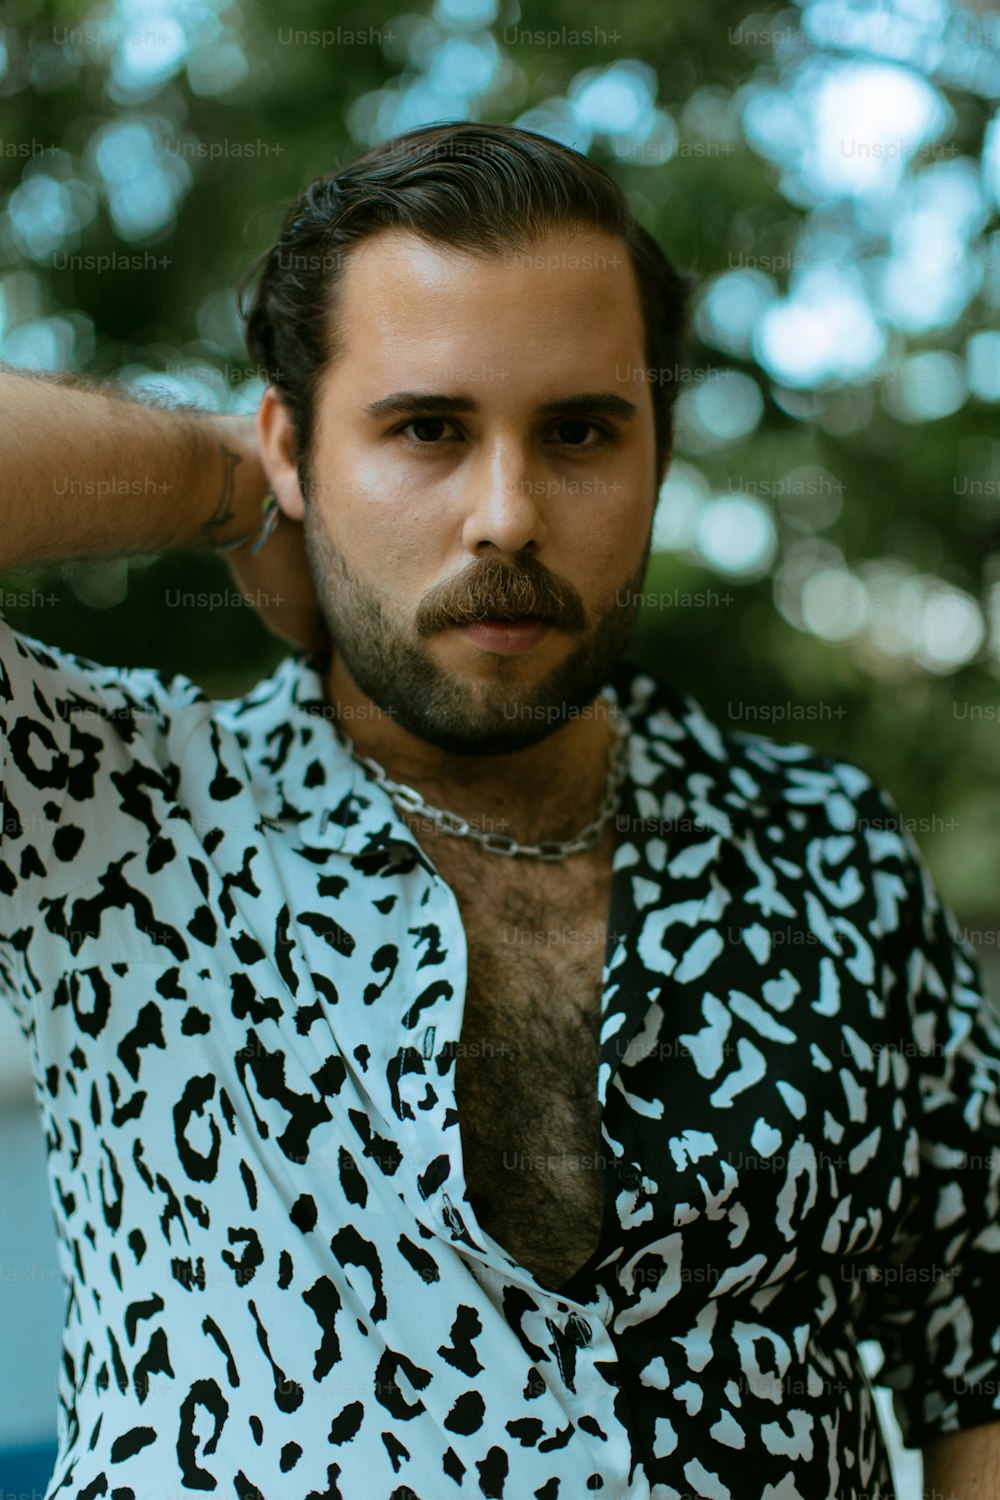 a man with a beard wearing a leopard print shirt